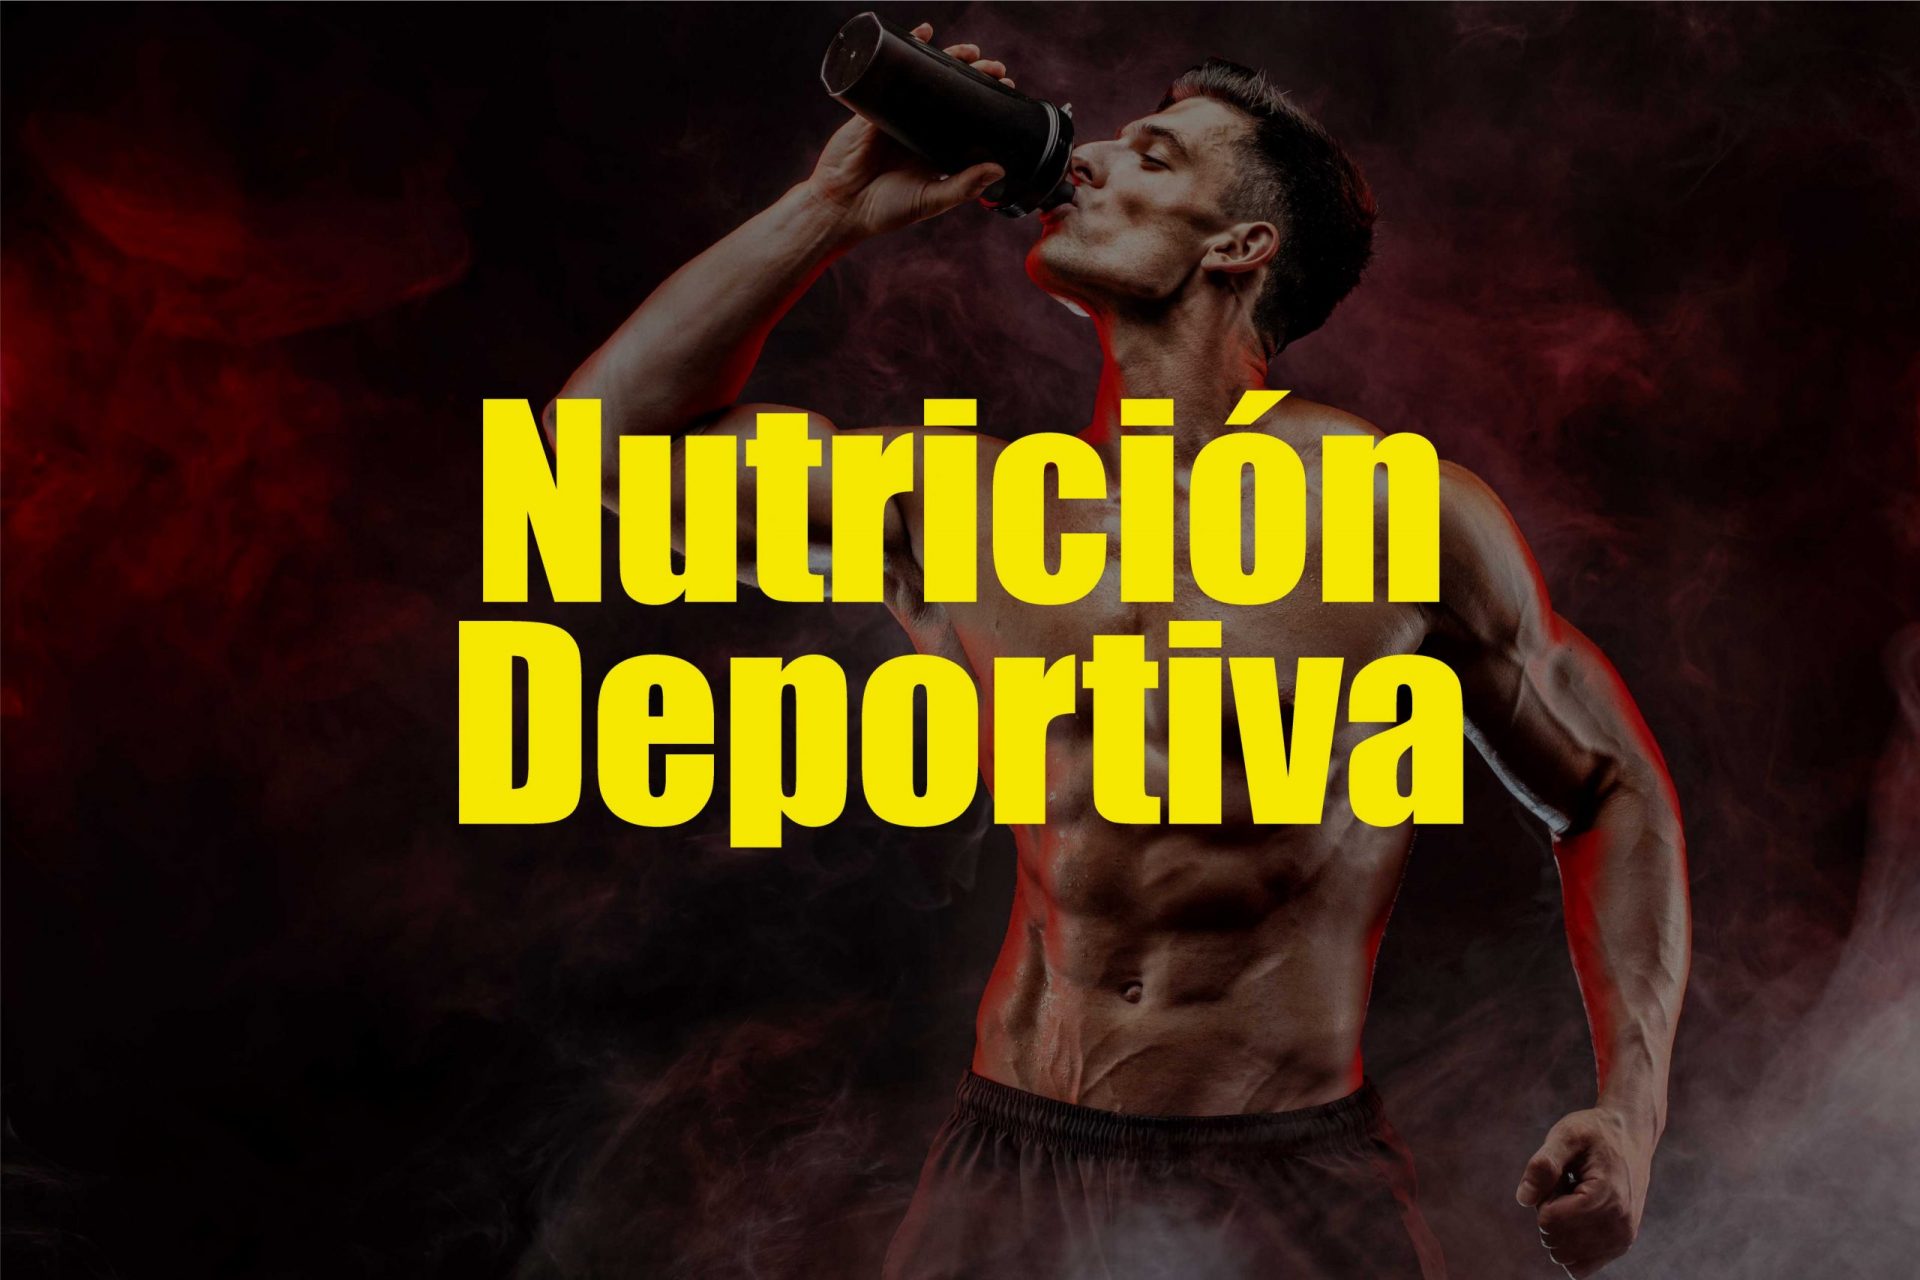 Nutrición Deportiva